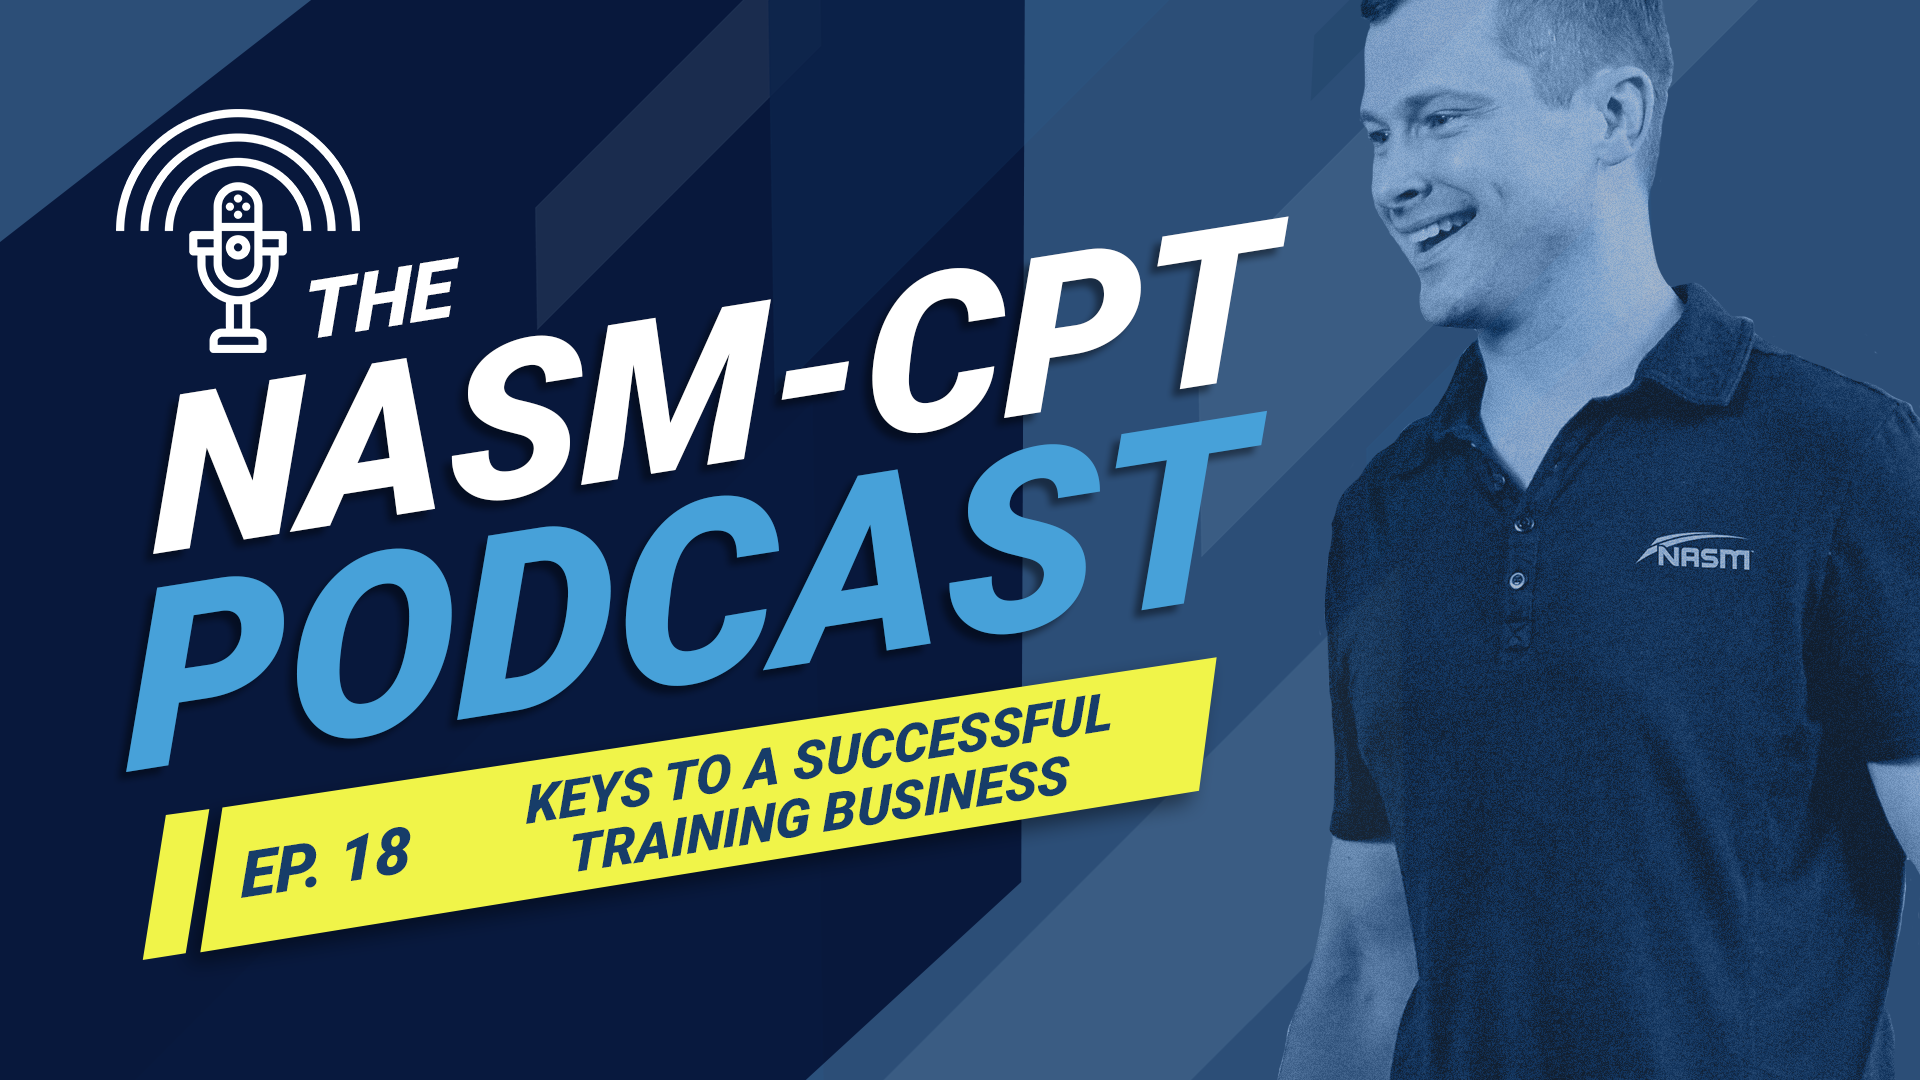 Подкаст NASM-CPT: ключи к успешному бизнесу по персональным тренировкам